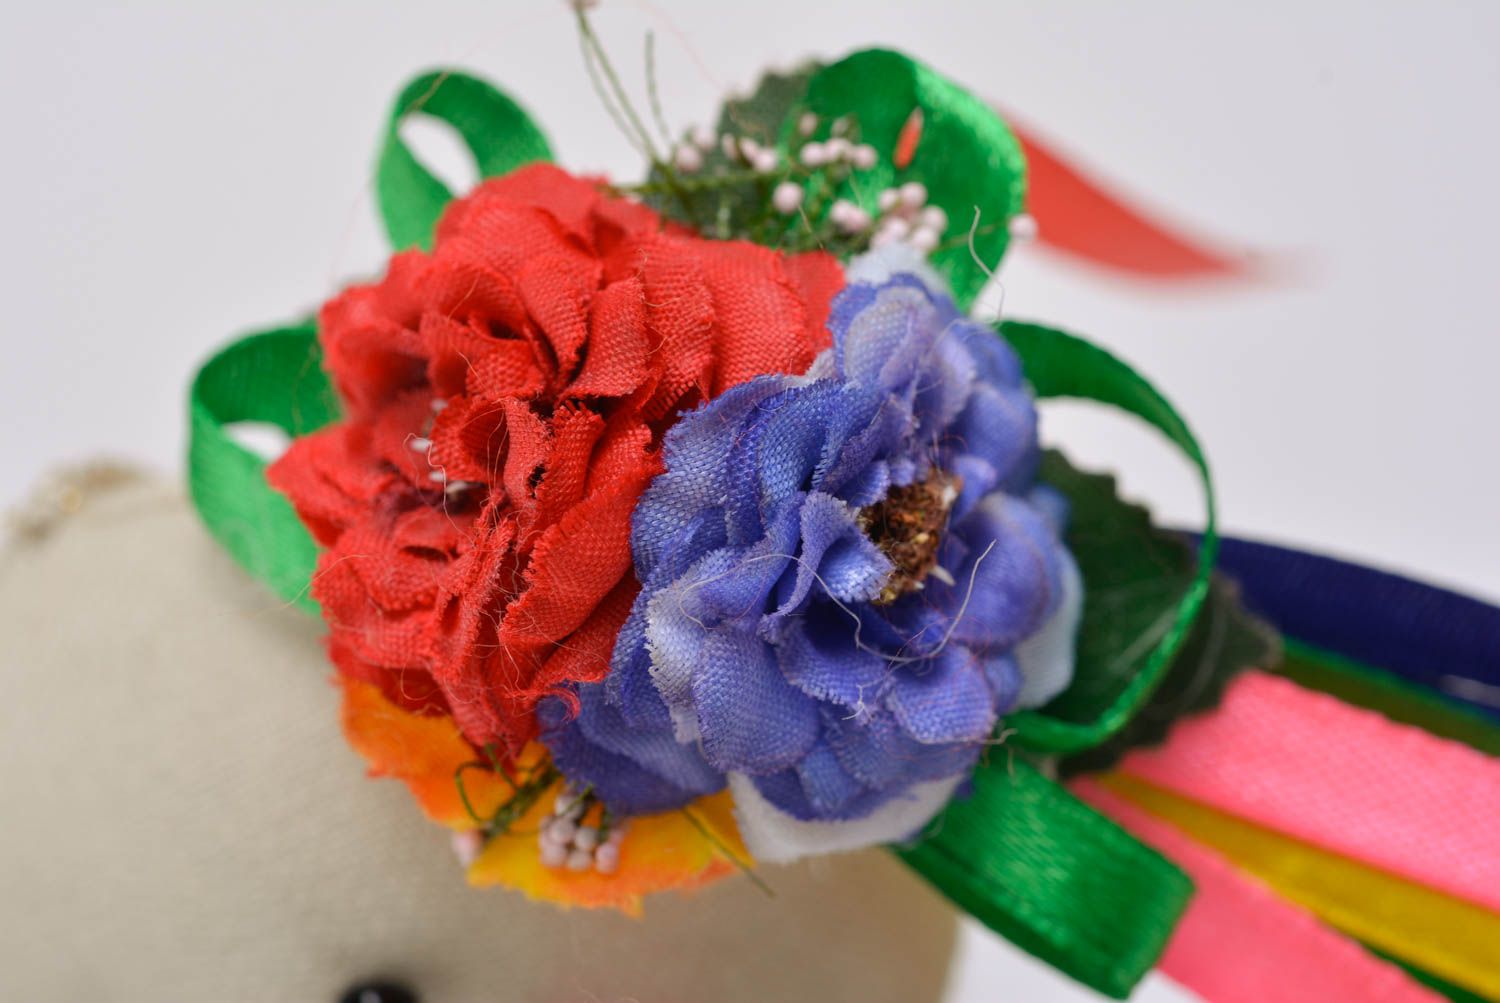 Joli jouet mou en tissu fait main en forme d'ourse sympa avec fleurs cadeau photo 5